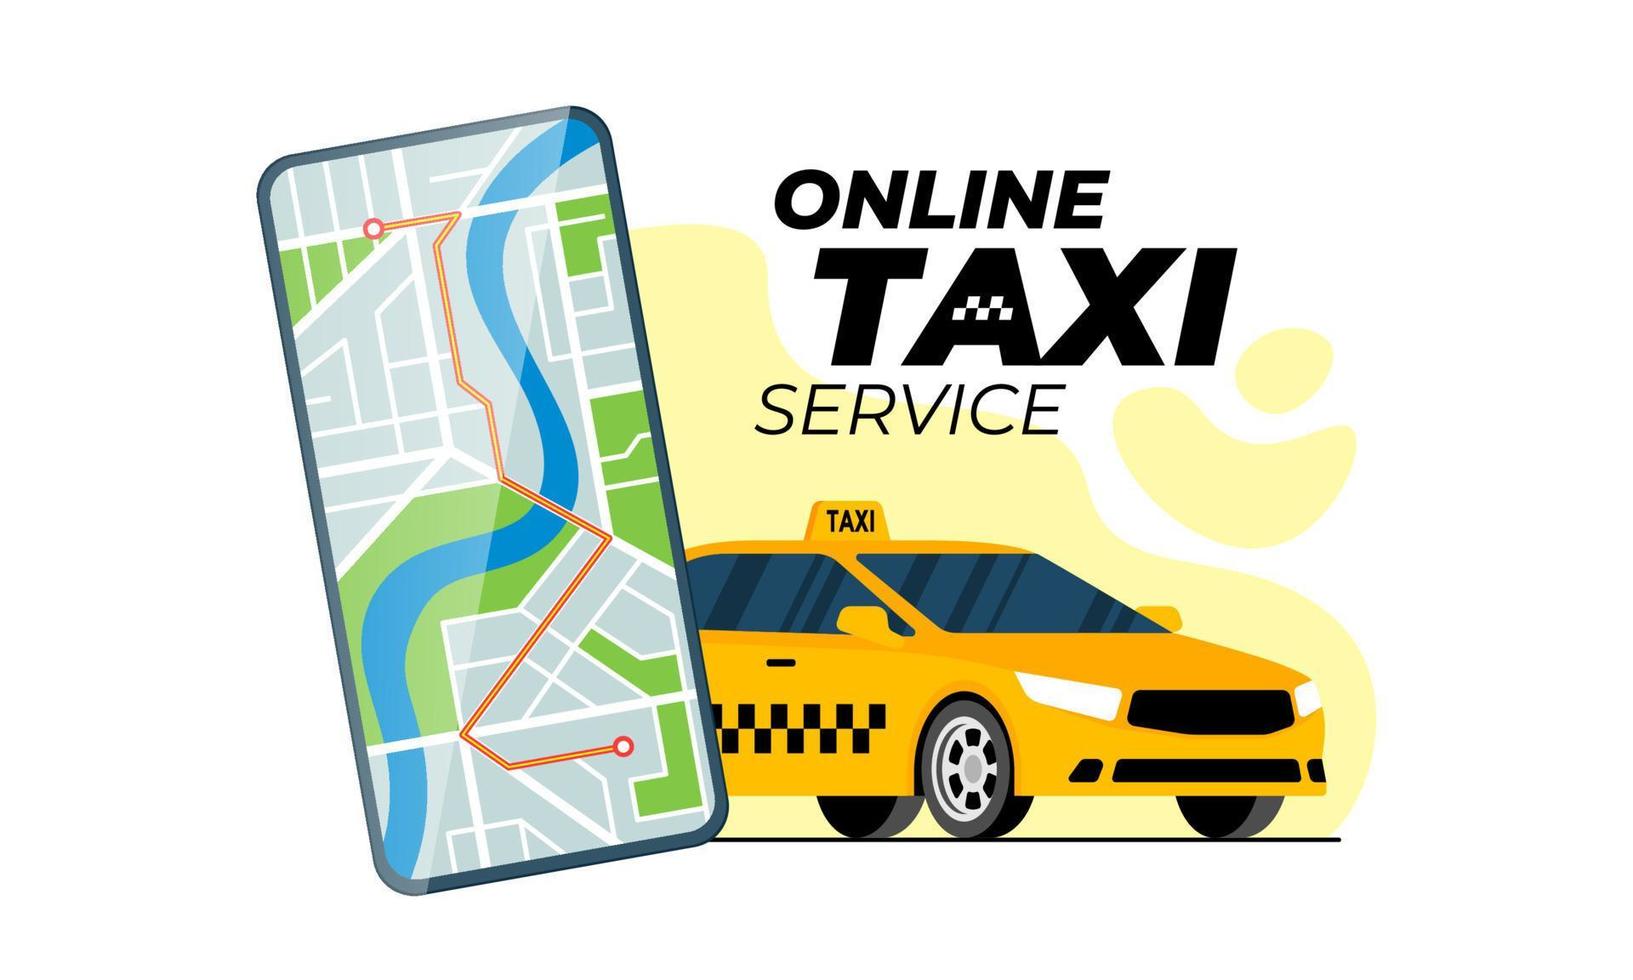 Taxi-Bestell- und Tracking-Service-Mobile-App-Konzept. gelbes Taxi mit Autoroute auf Stadtplan auf Smartphone-Bildschirm. Taxi online bestellen. Holen Sie sich das Werbebanner für die Transport-Webanwendung. Vektor-eps vektor